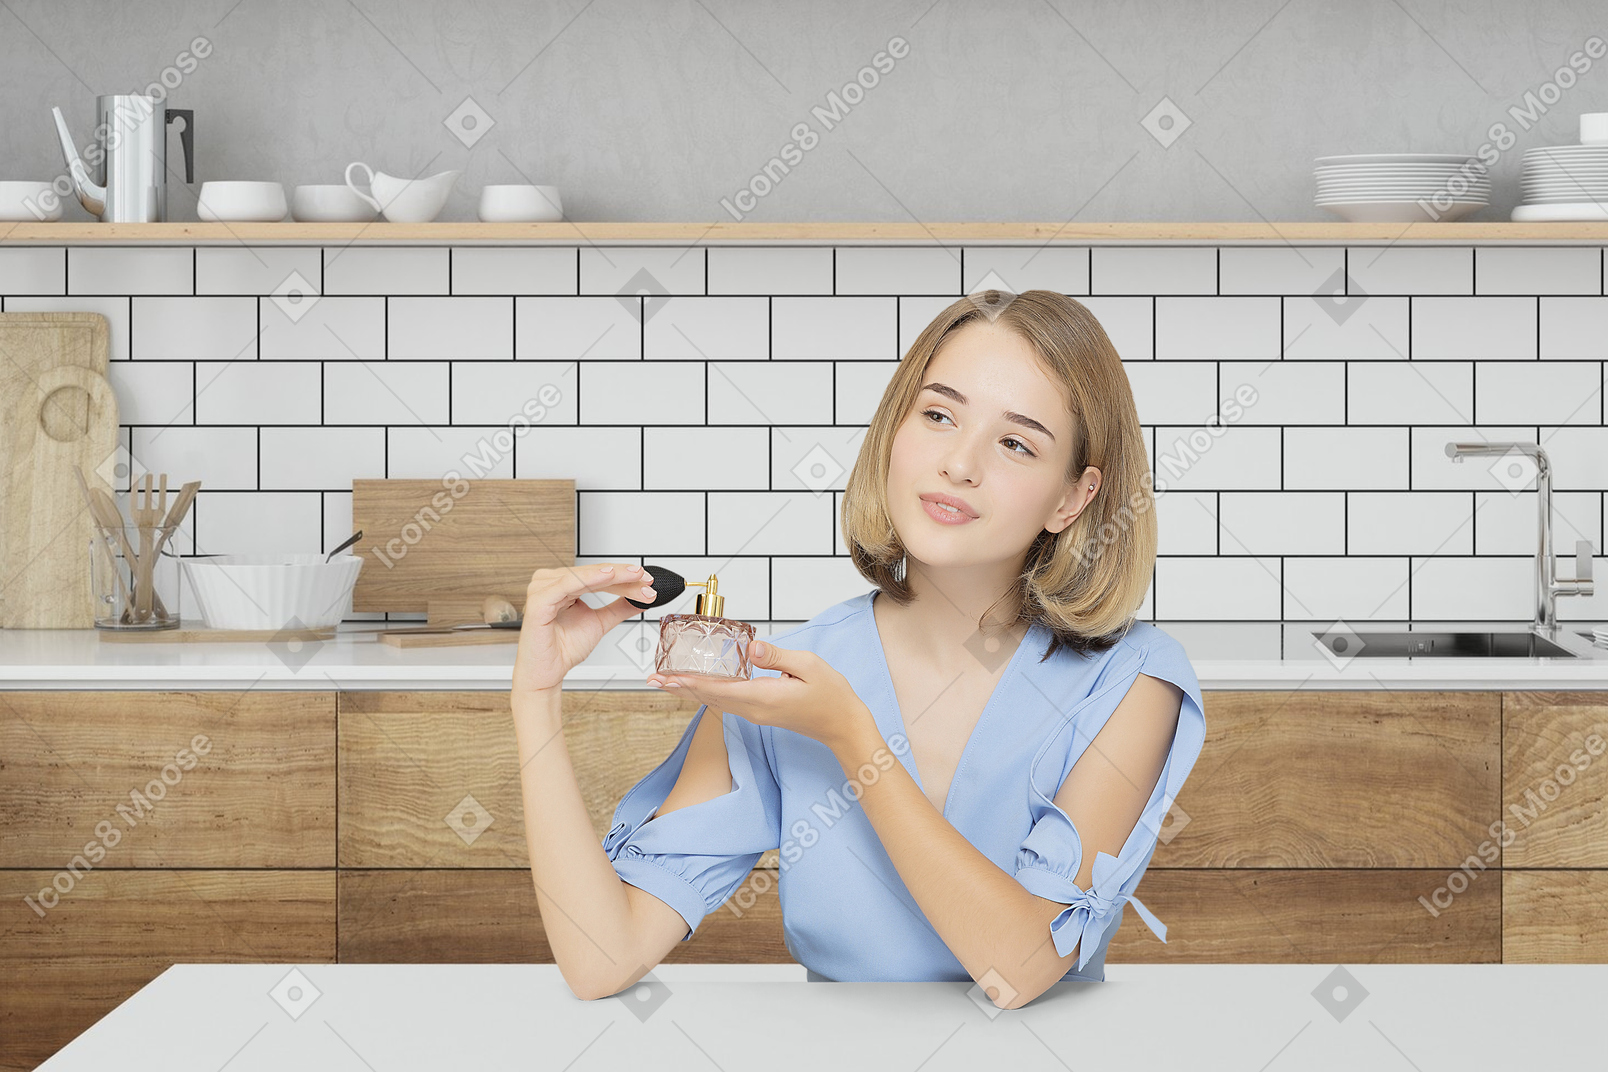 Молодая женщина сидит на кухне и держит флакон духов